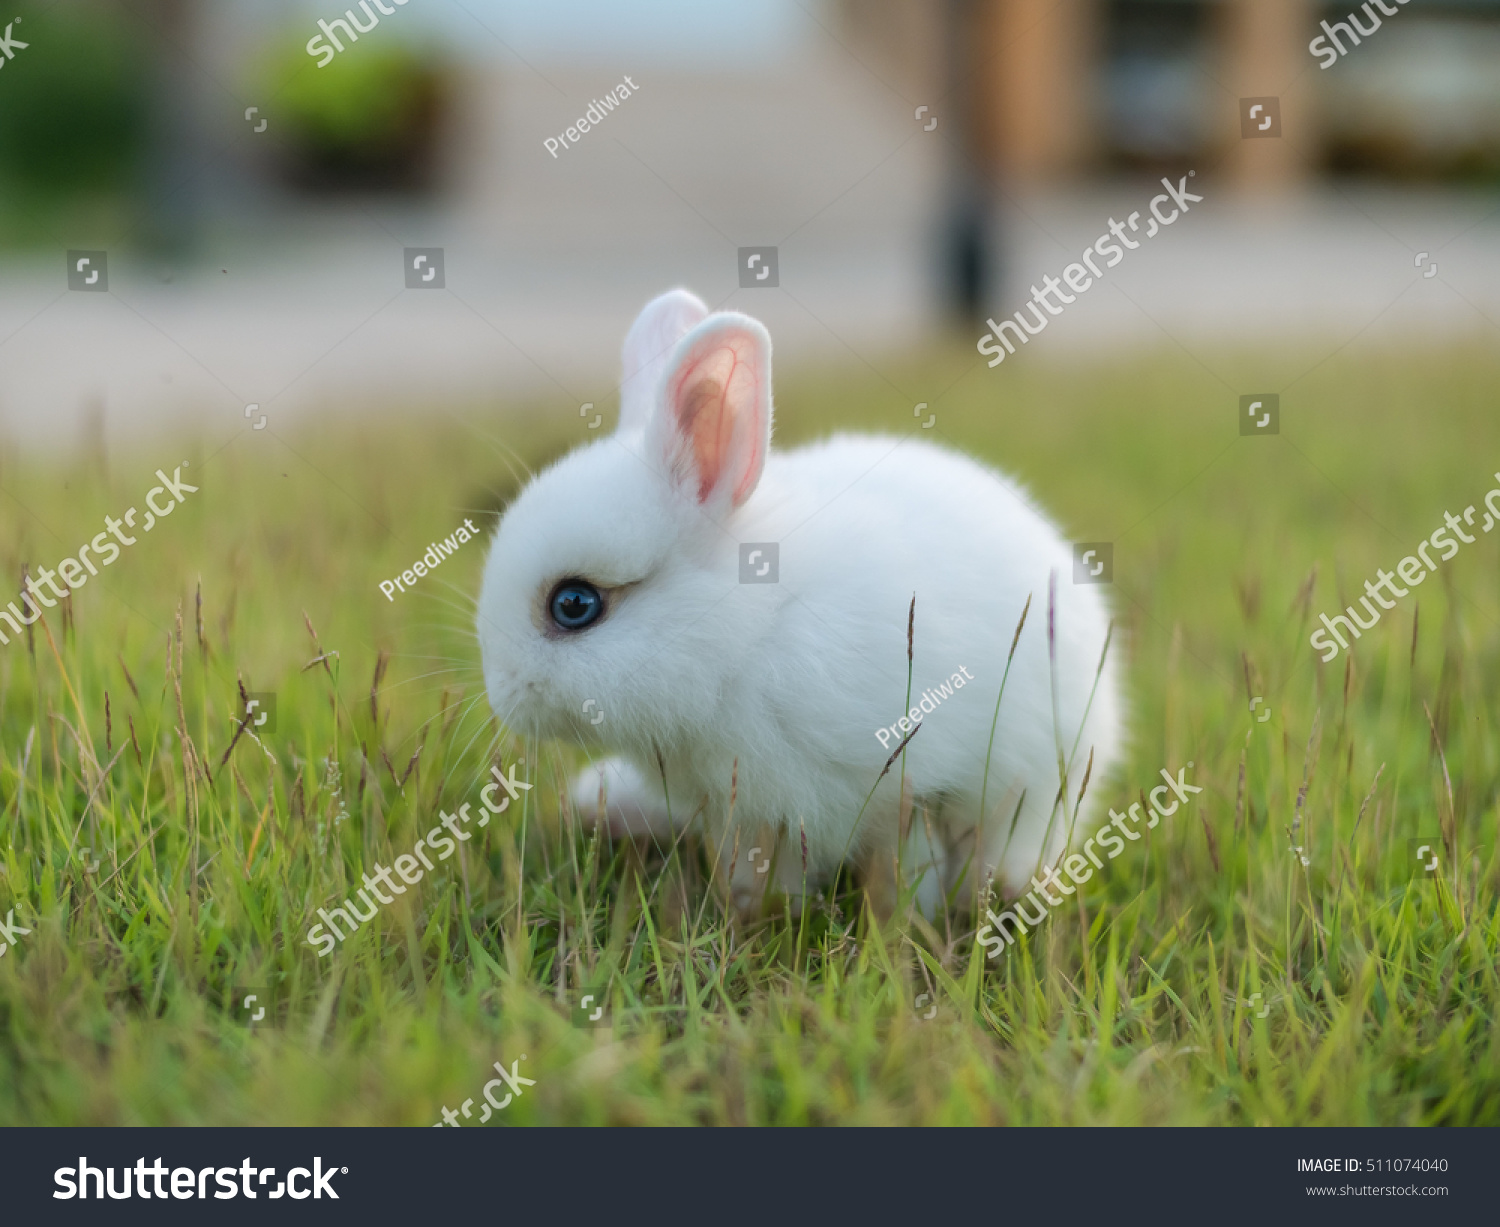 dwarf rabbits